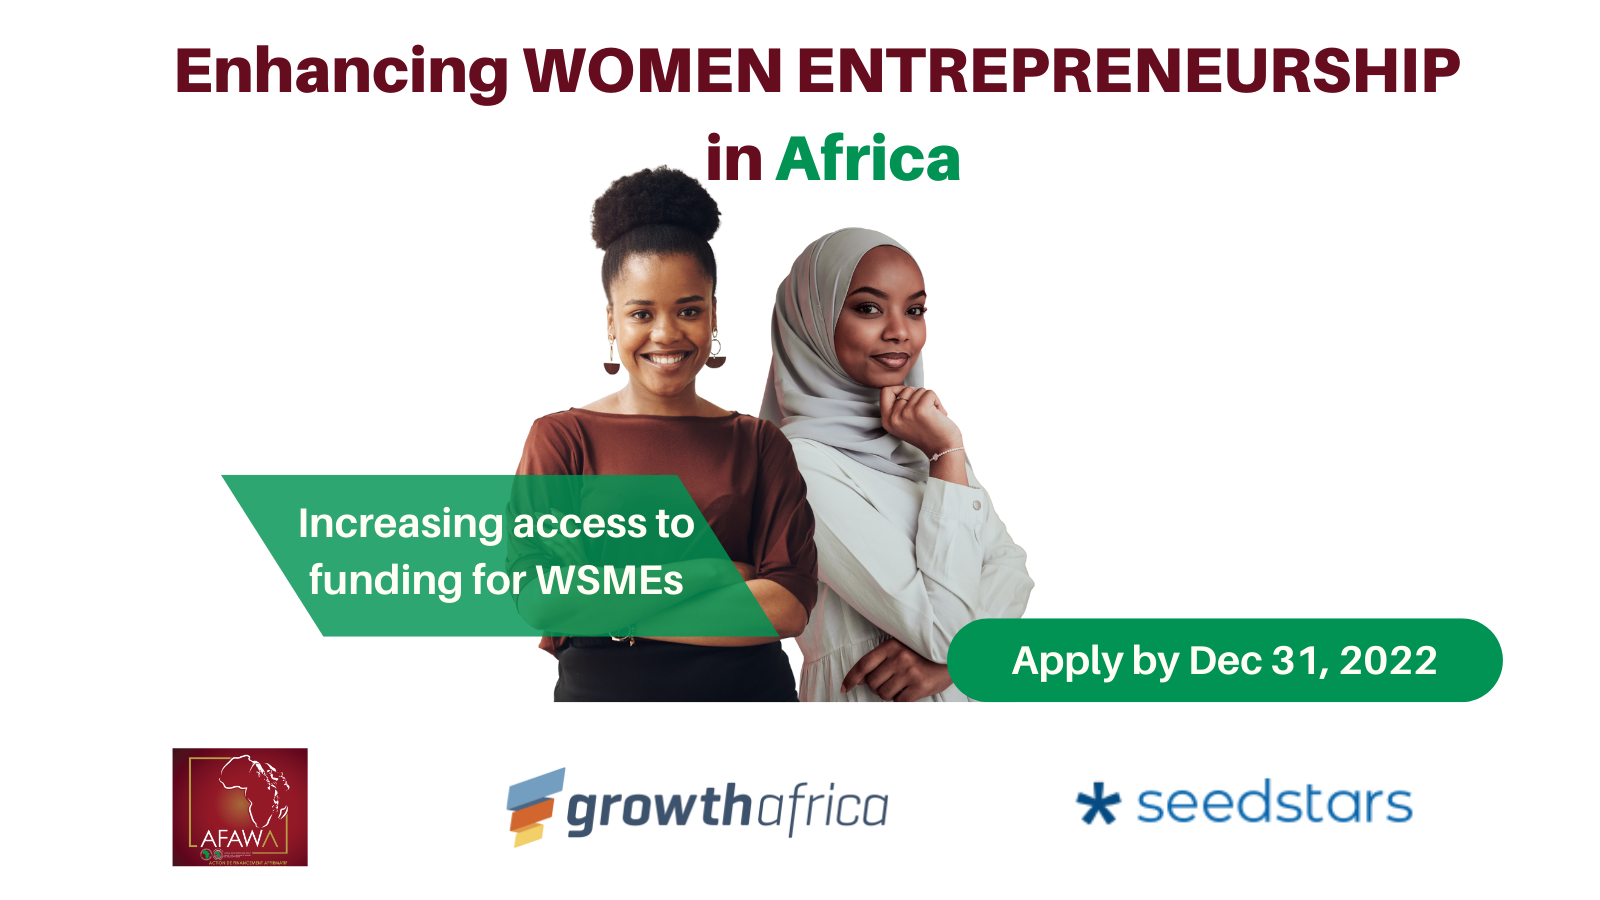 Seedstars Launches Program for Women-led Startups